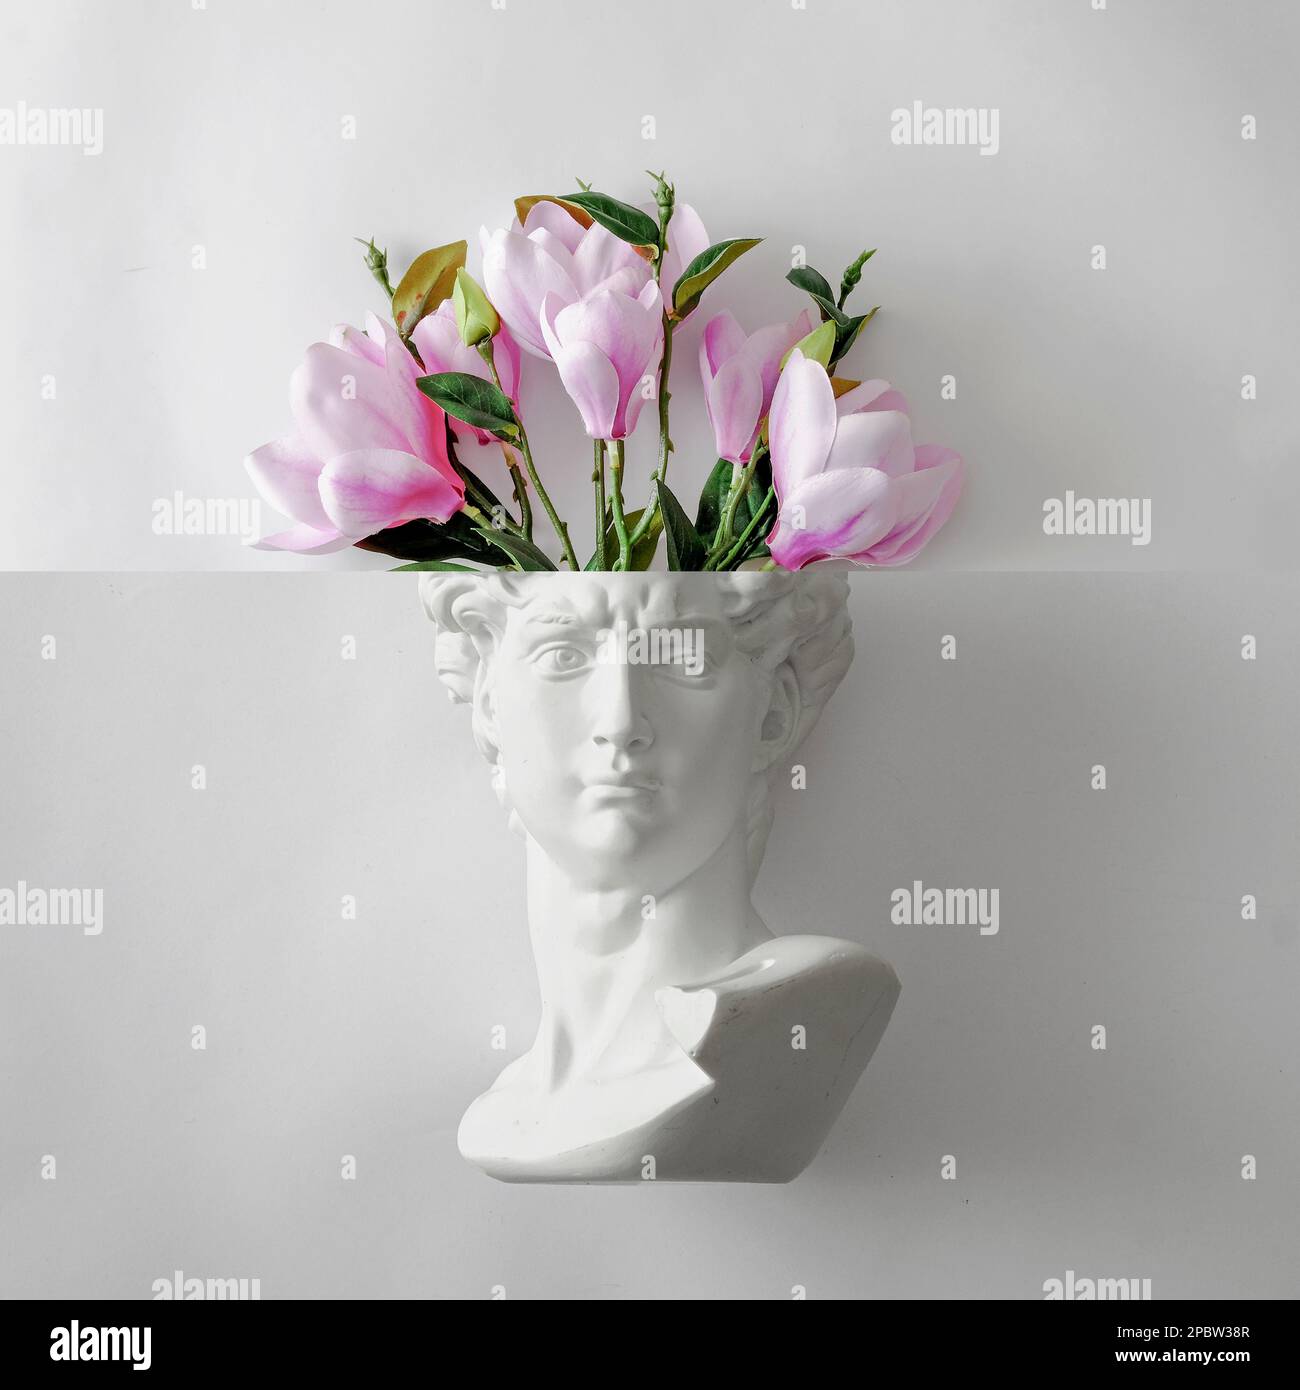 Le buste de la statue de David de Michel-Ange et un bouquet de fleurs comme un cerveau. Concept ludique minimal de cadeau de printemps, de créativité et d'art. Photo de haute qualité Banque D'Images